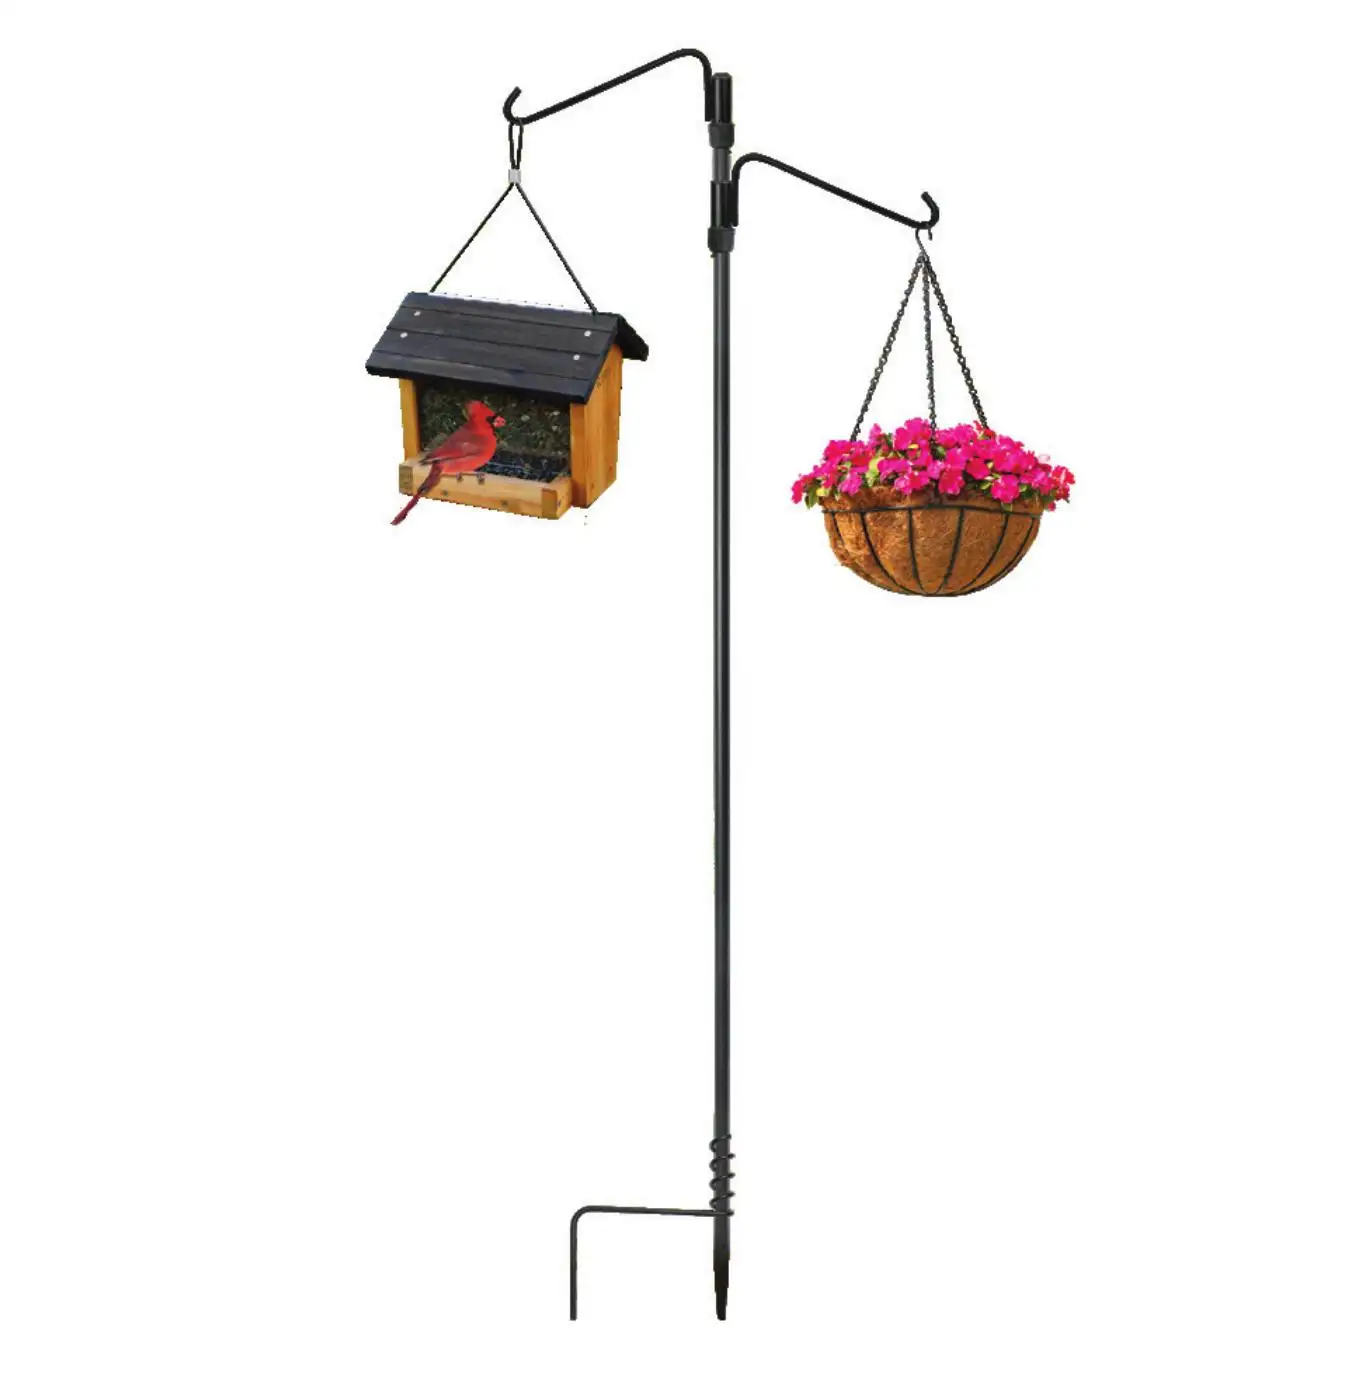 Garden hangers outdoor for plants garden hangers for bird feeders Hanging Adjustable pole Multiple Hooks